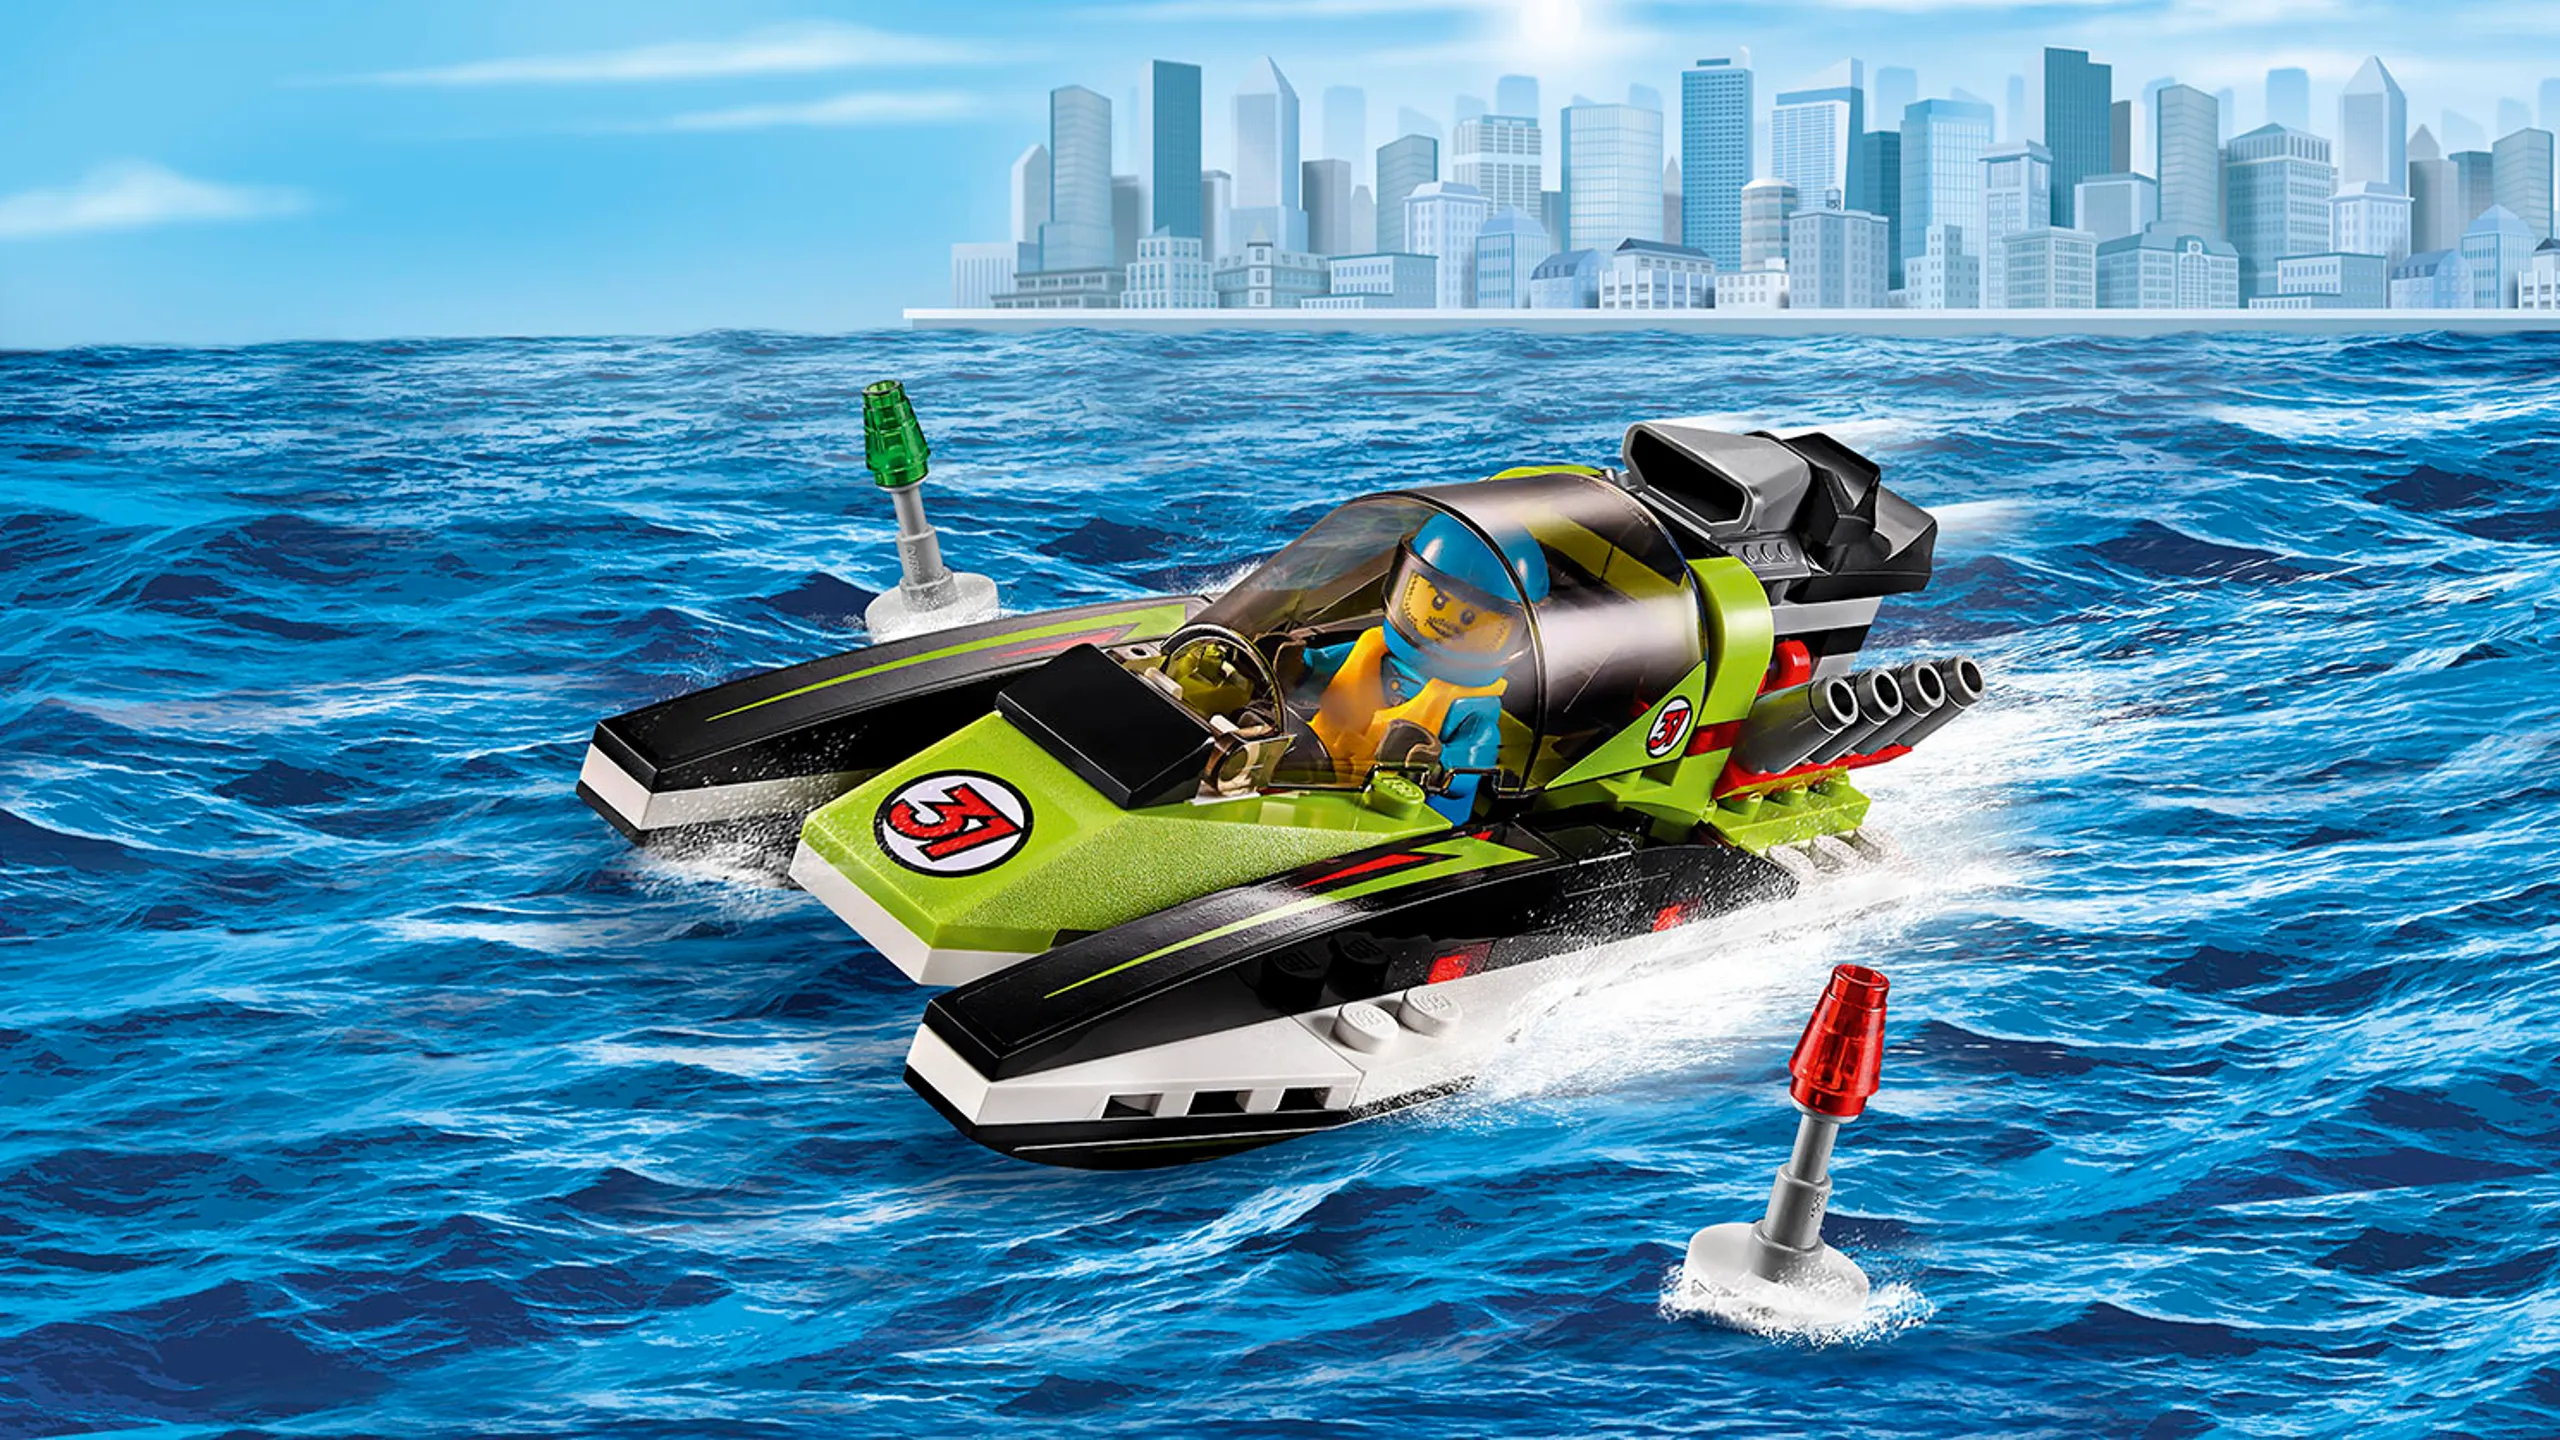 LEGO City Les super véhicules Bateau de course vert – Le bateau de course 60114